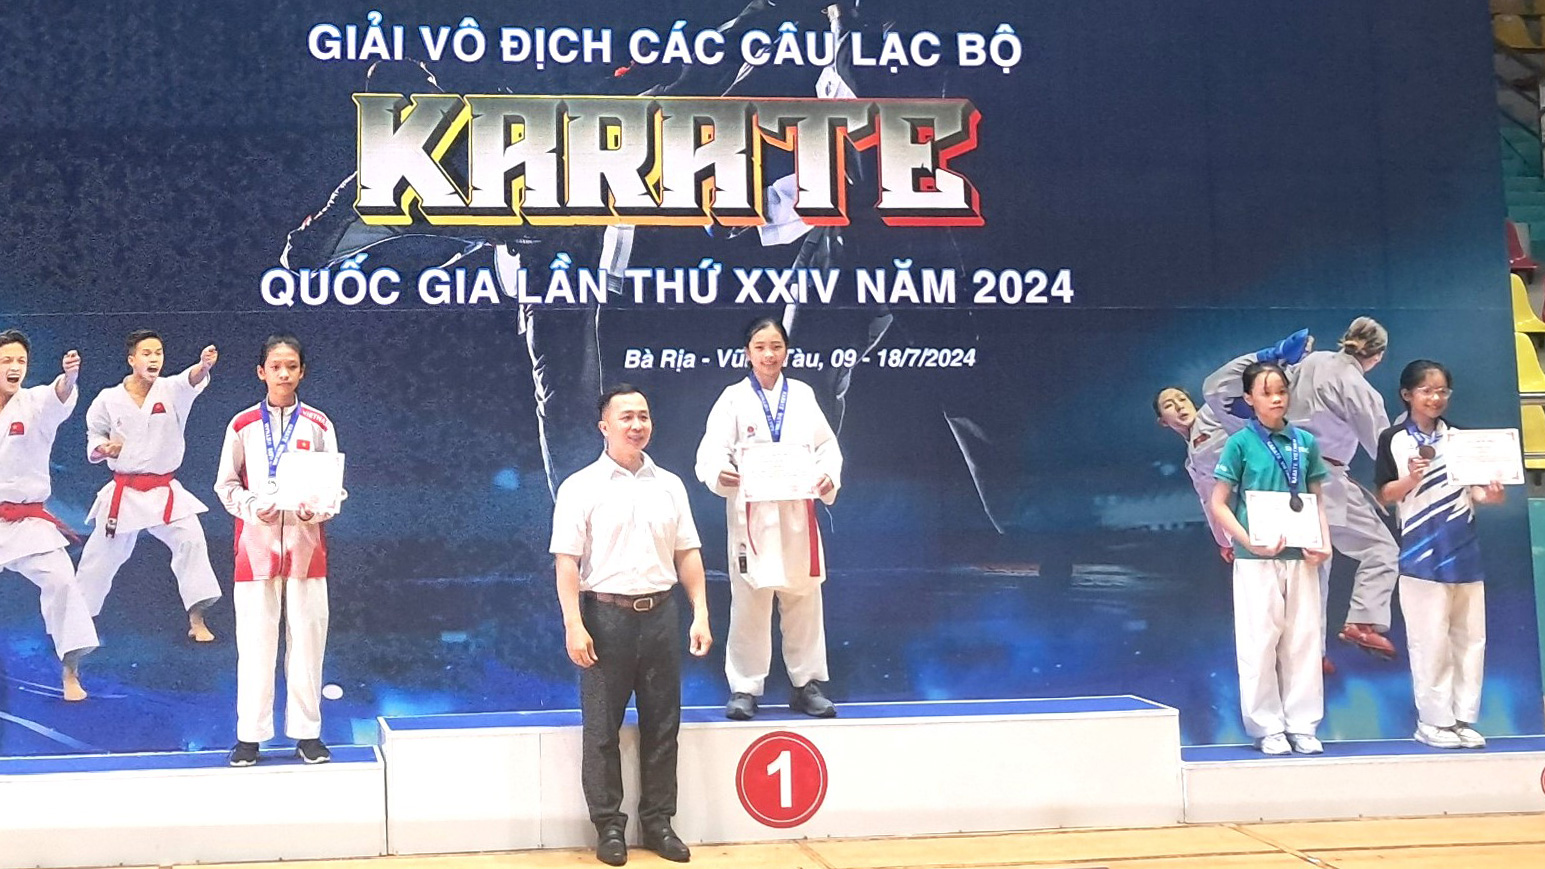 VĐV Nguyễn Thanh Xuân của Lâm Đồng trên bục nhận huy chương vàng